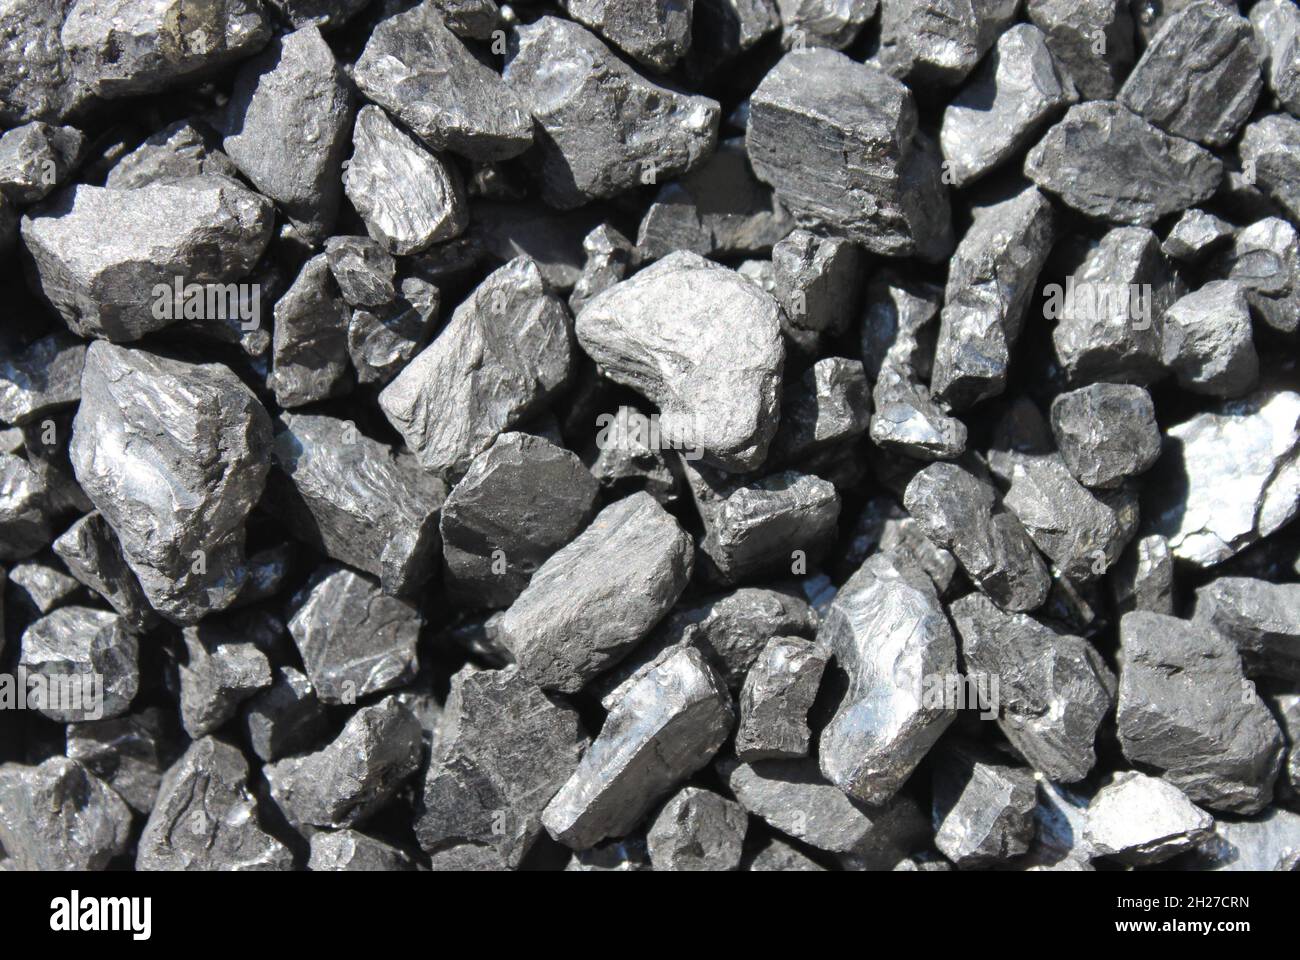 l'un des derniers charbons noirs d'antrazite de la mine d'ibbenbüren allemagne avant sa fermeture Banque D'Images